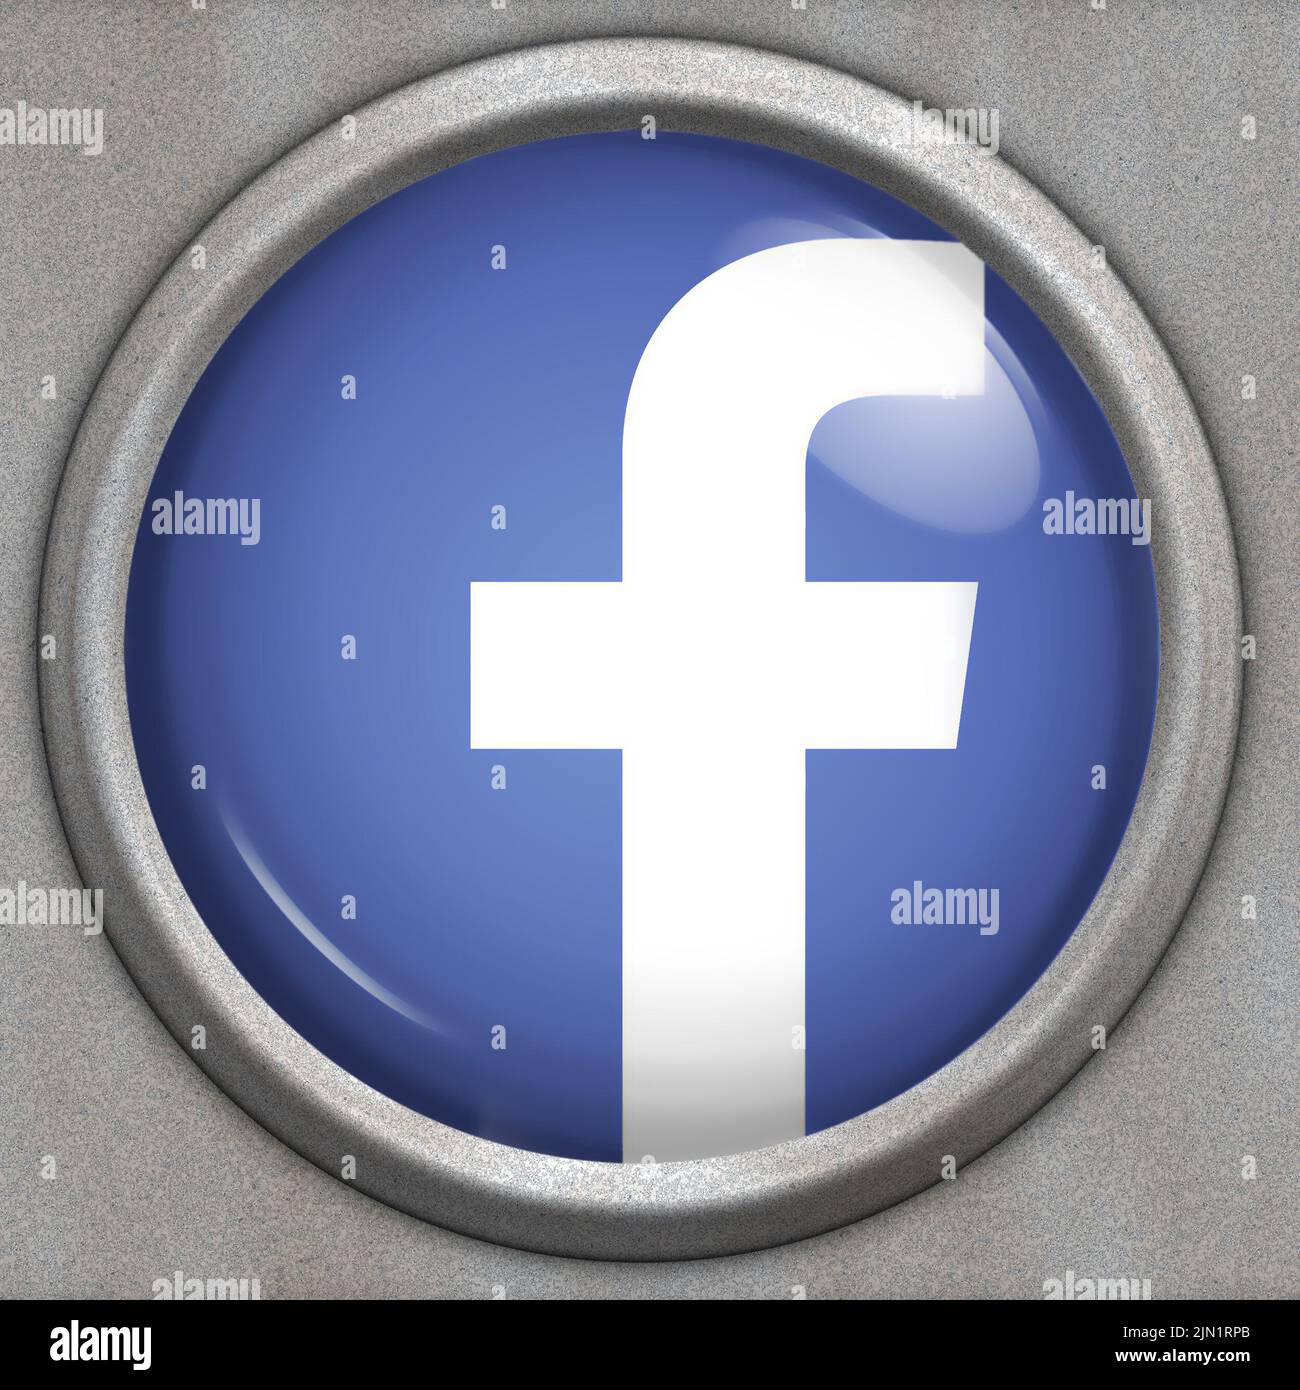 Botón con logotipo del servicio de redes sociales Facebook Foto de stock